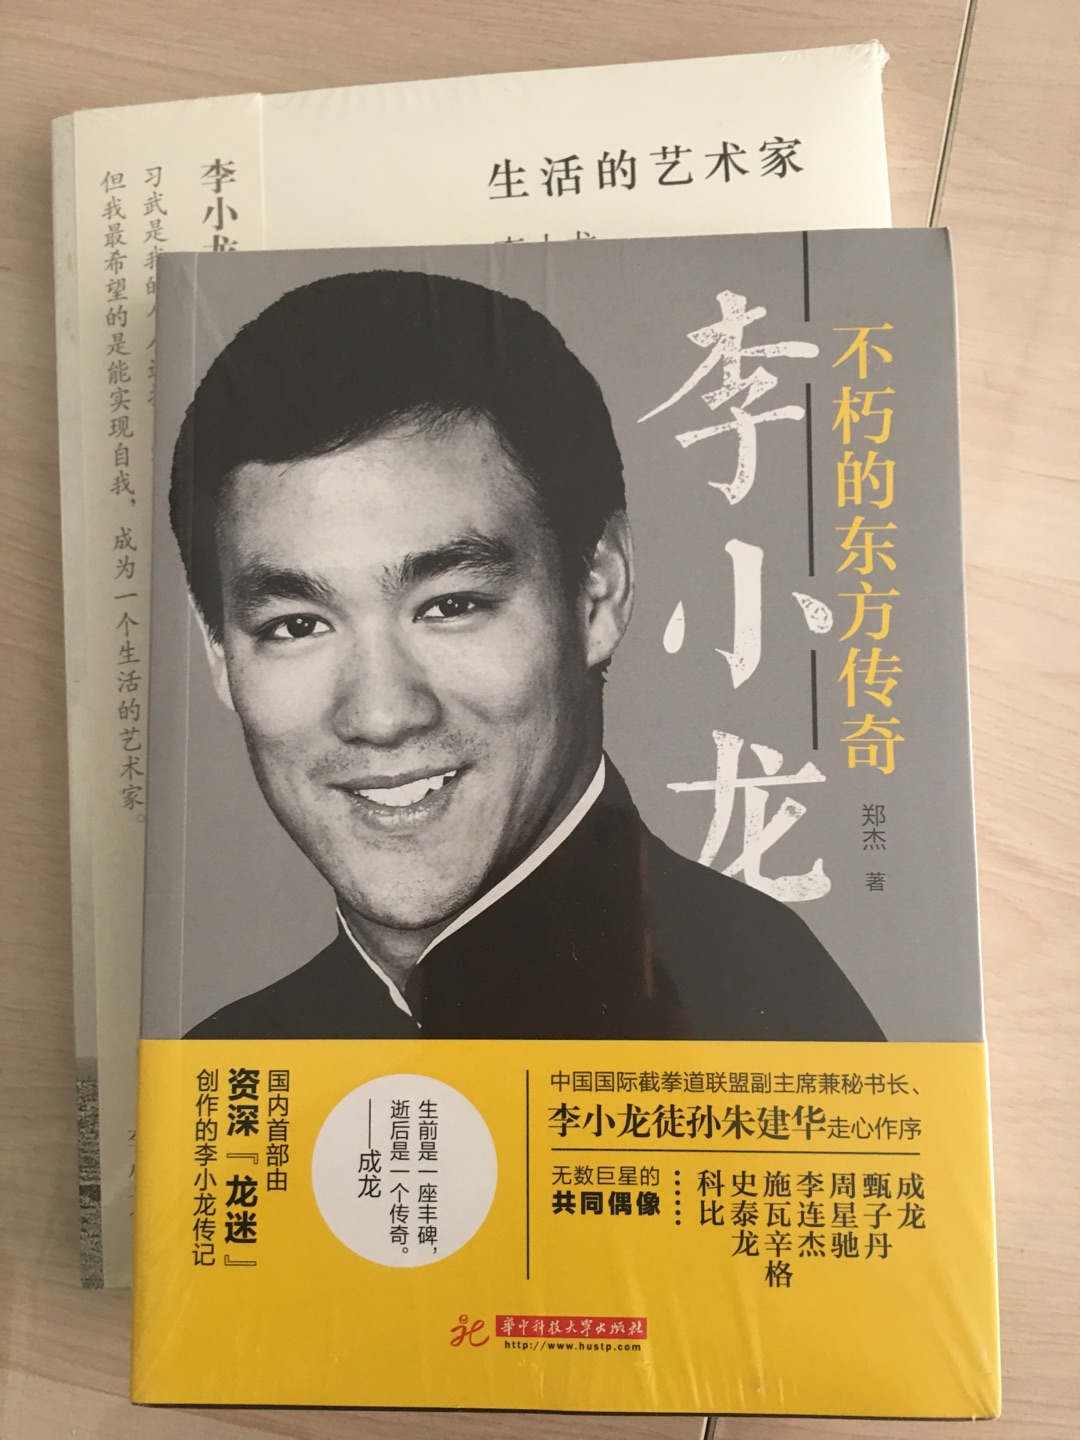 李小龙是一个民族的骄傲，更是中华武术之魂，我最敬仰的功夫明星，也是广发动作片迷的共同偶像，买书品读，期待离偶像更近！